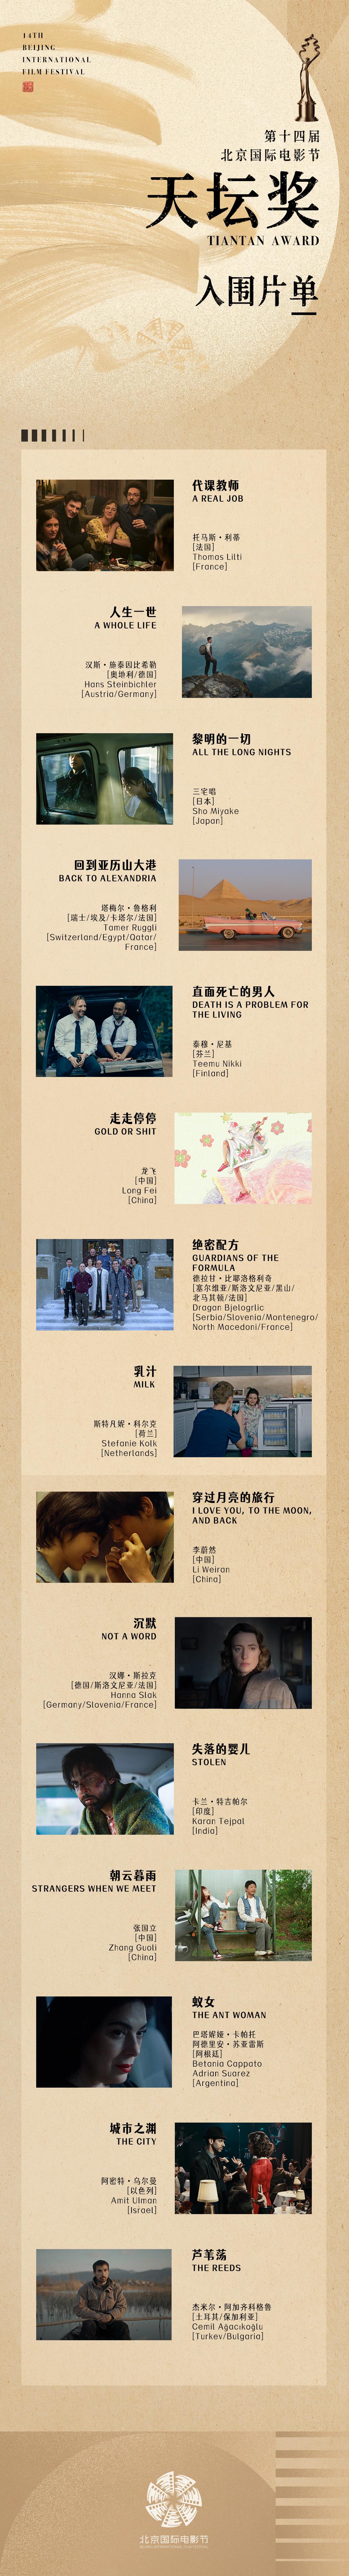 第十四届北京国际电影节4月18日开幕 “天坛奖”评委和入围影片公布